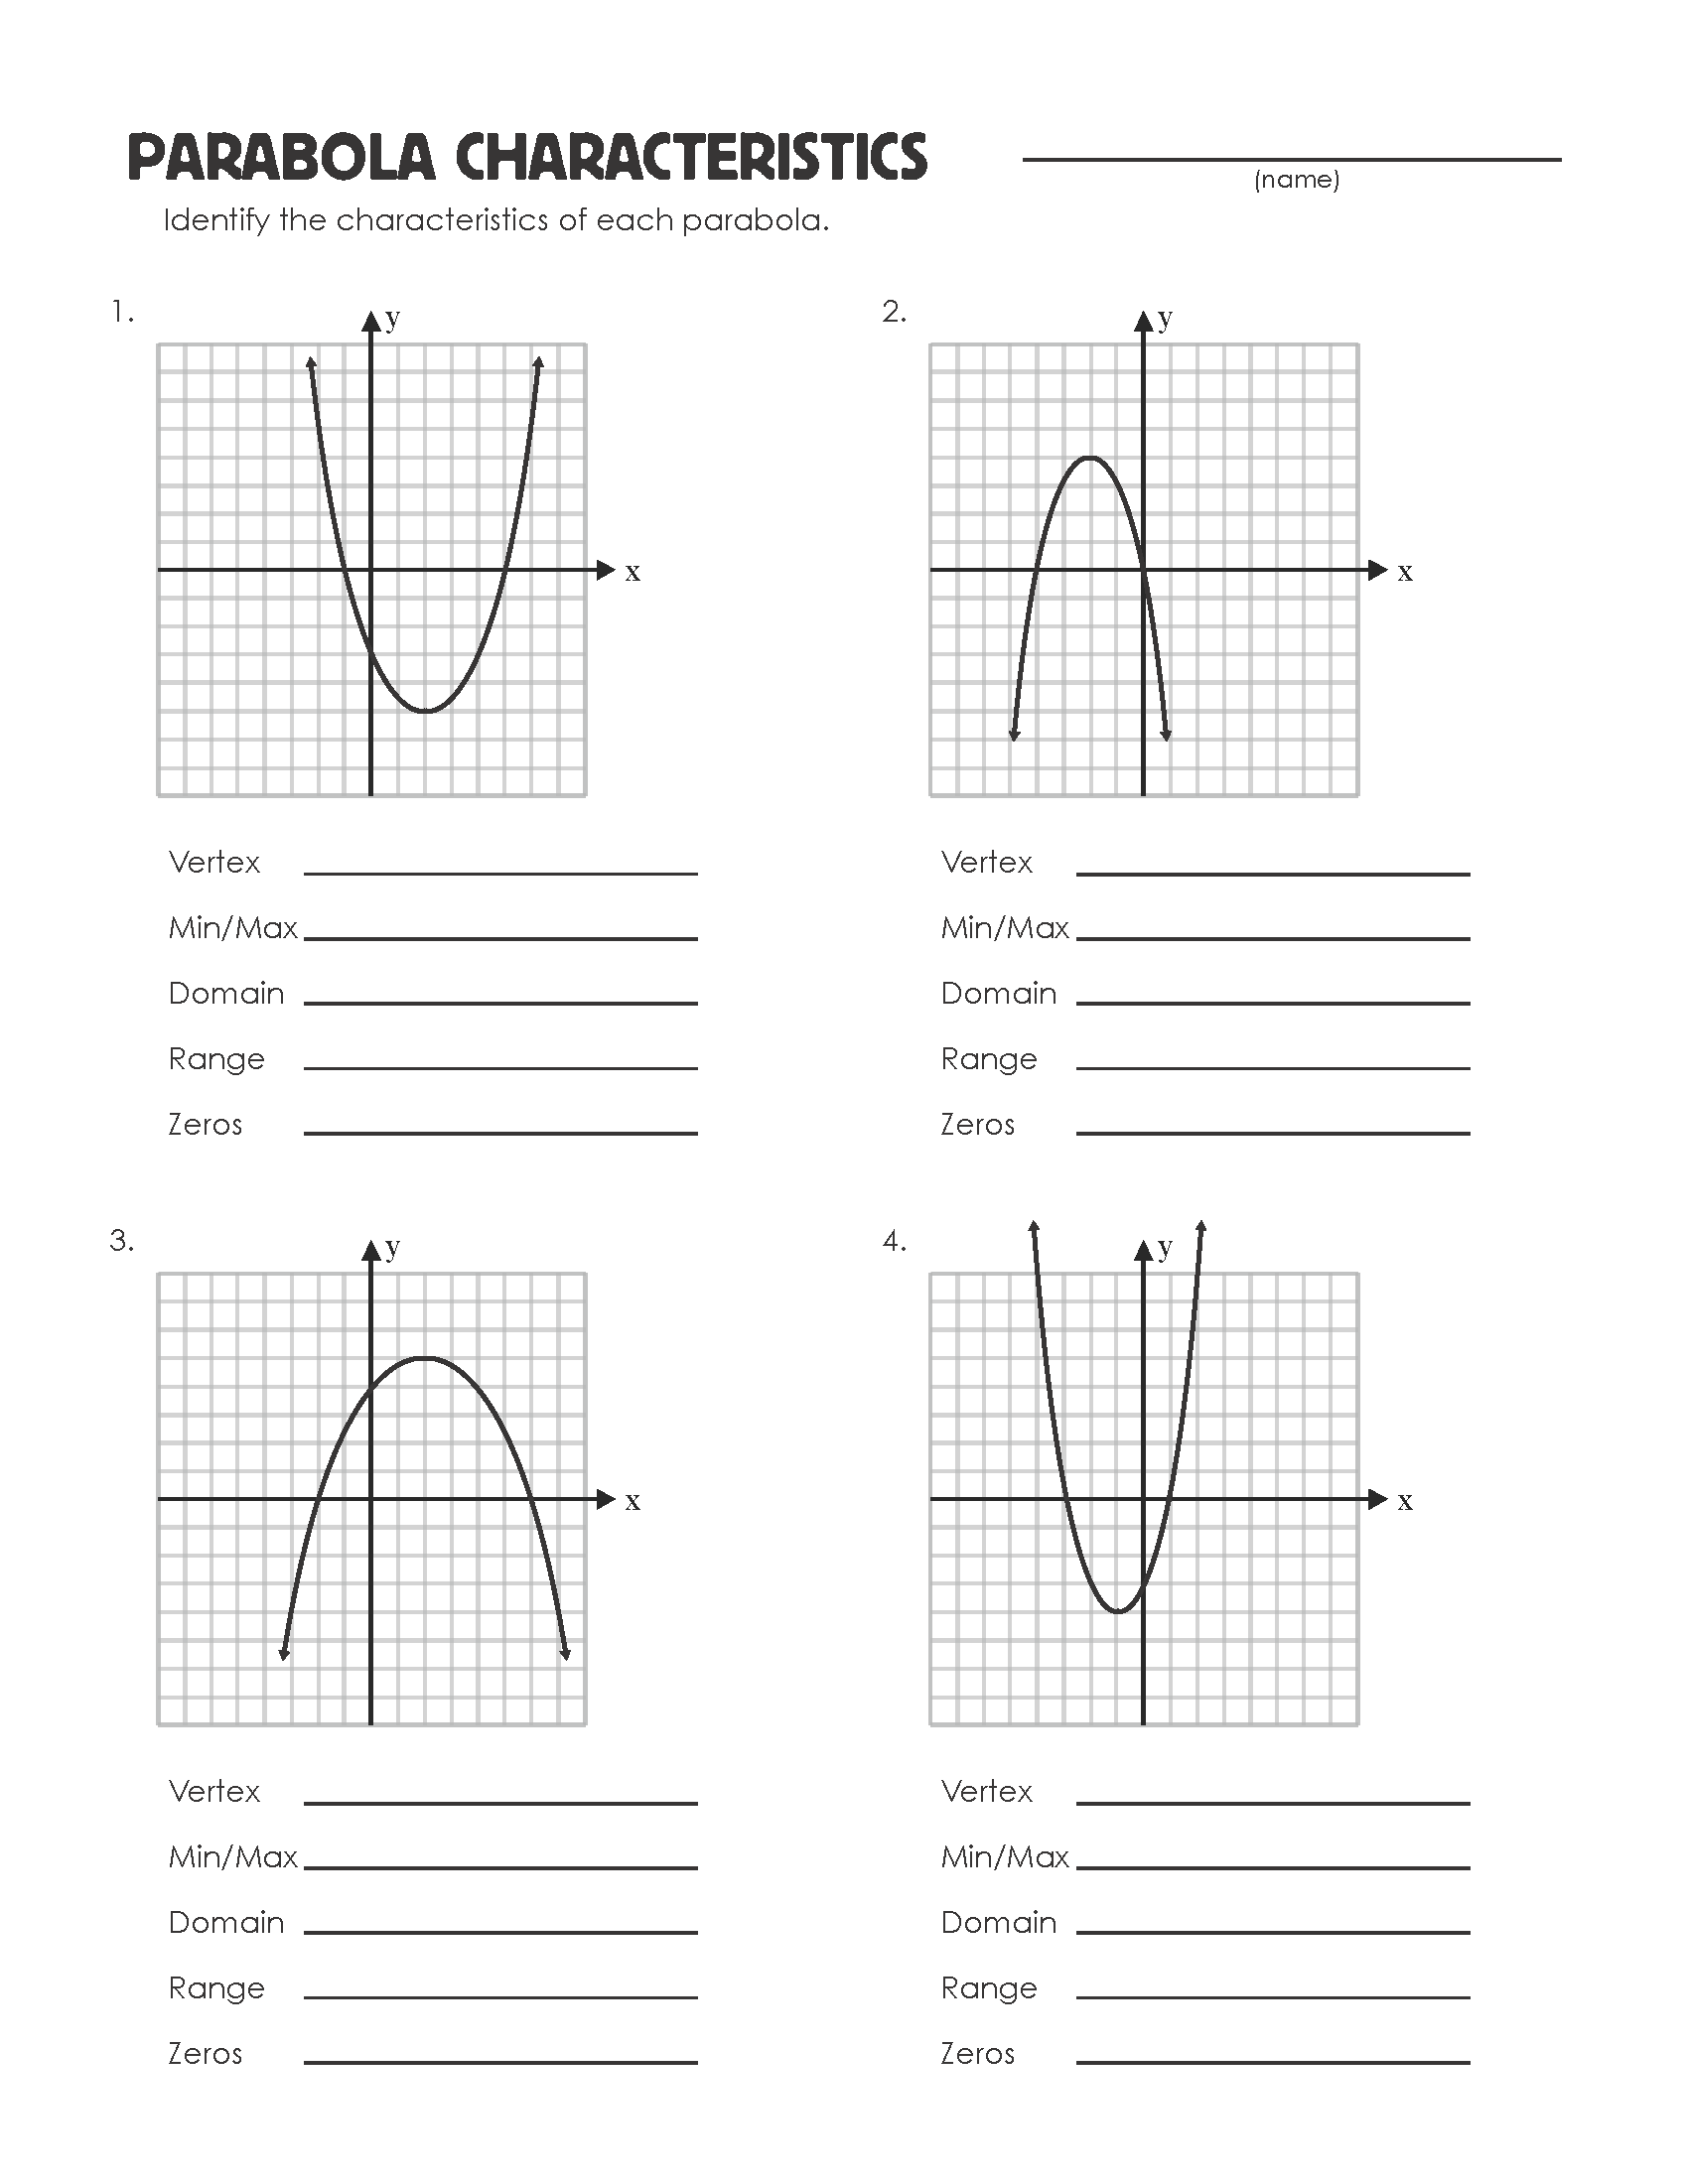 Parabola Characteristics Worksheet Image